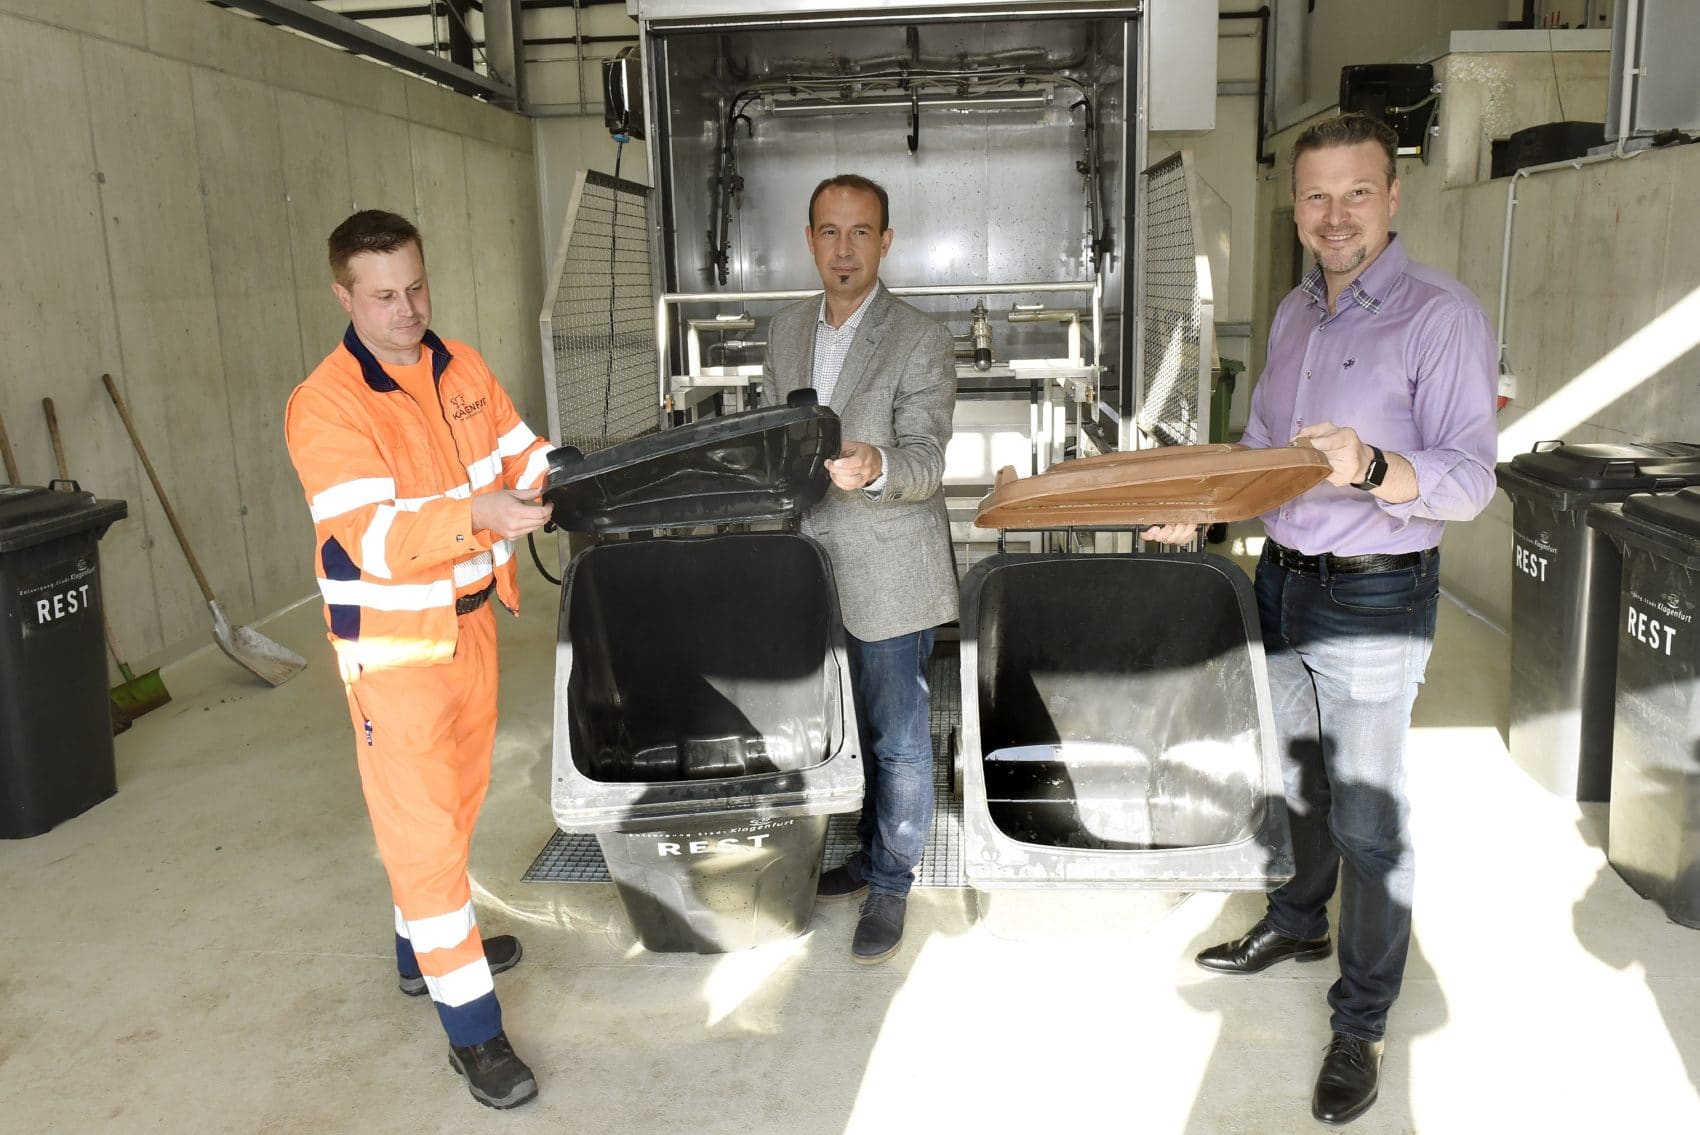 Entsorgungsreferent  Vizebürgermeister  Wolfgang  Germ  und  Gernot 
Bogensberger (Leiter Abteilung Entsorgung) nehmen die neue Behälterwaschanlage 
offiziell in Betrieb.